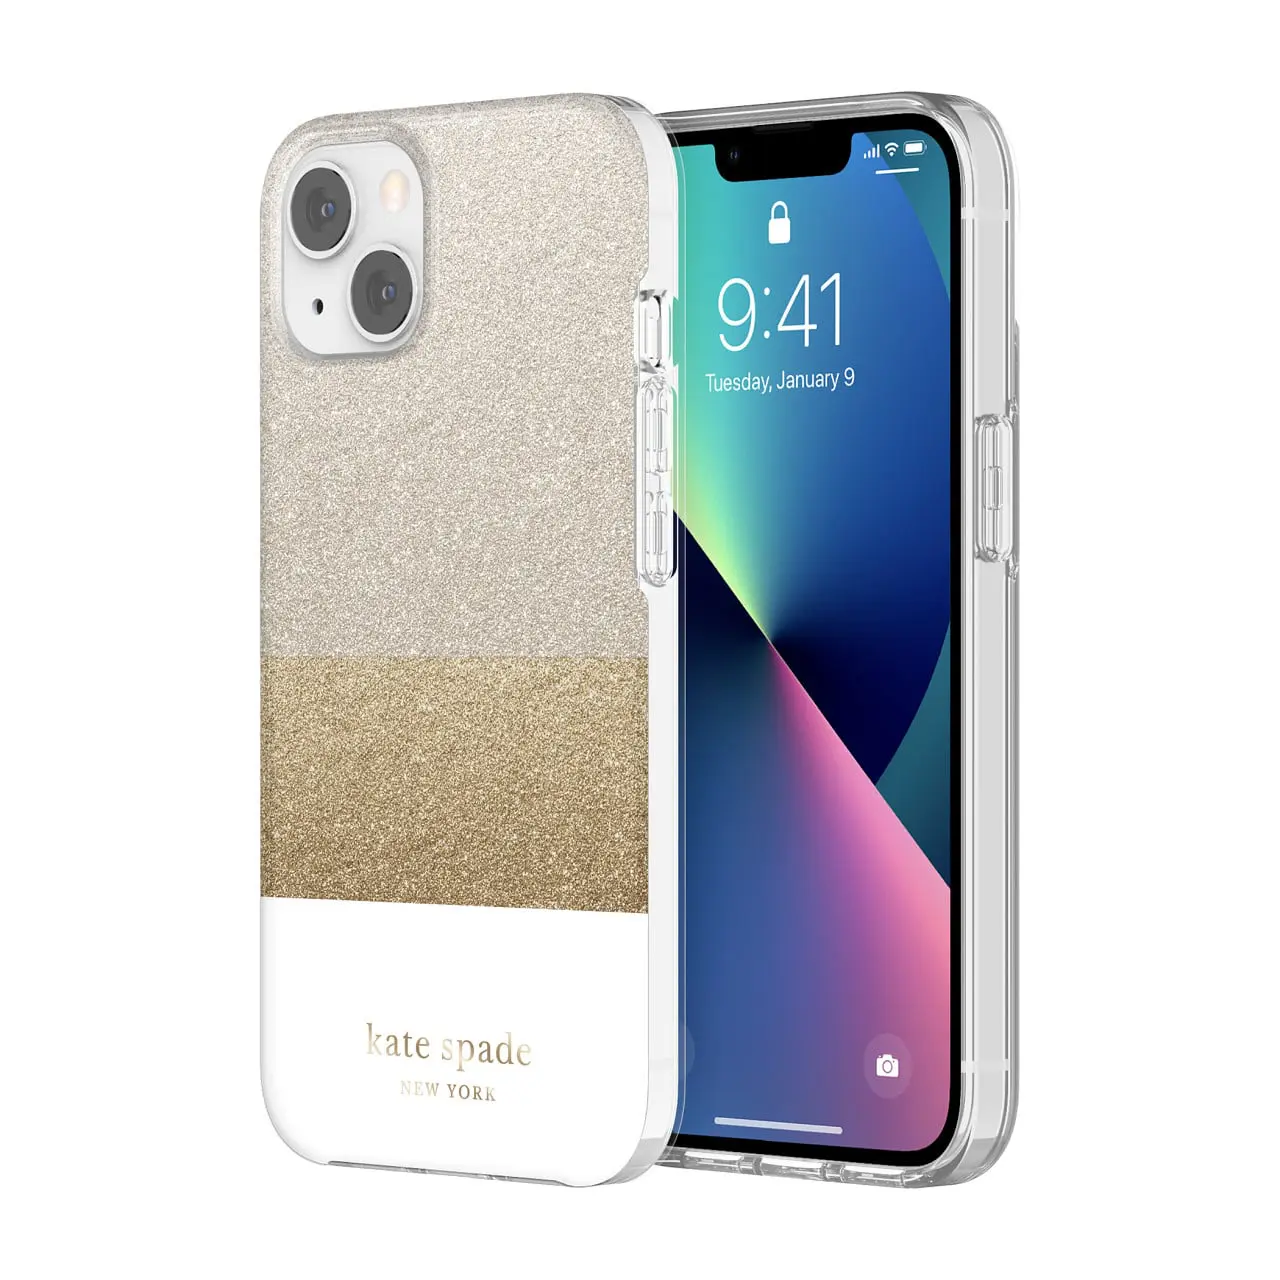 เคส Kate Spade New York รุ่น Protective Hardshell Case - iPhone 13 - Glitter Block White/Silver Glitter/Gold Glitter